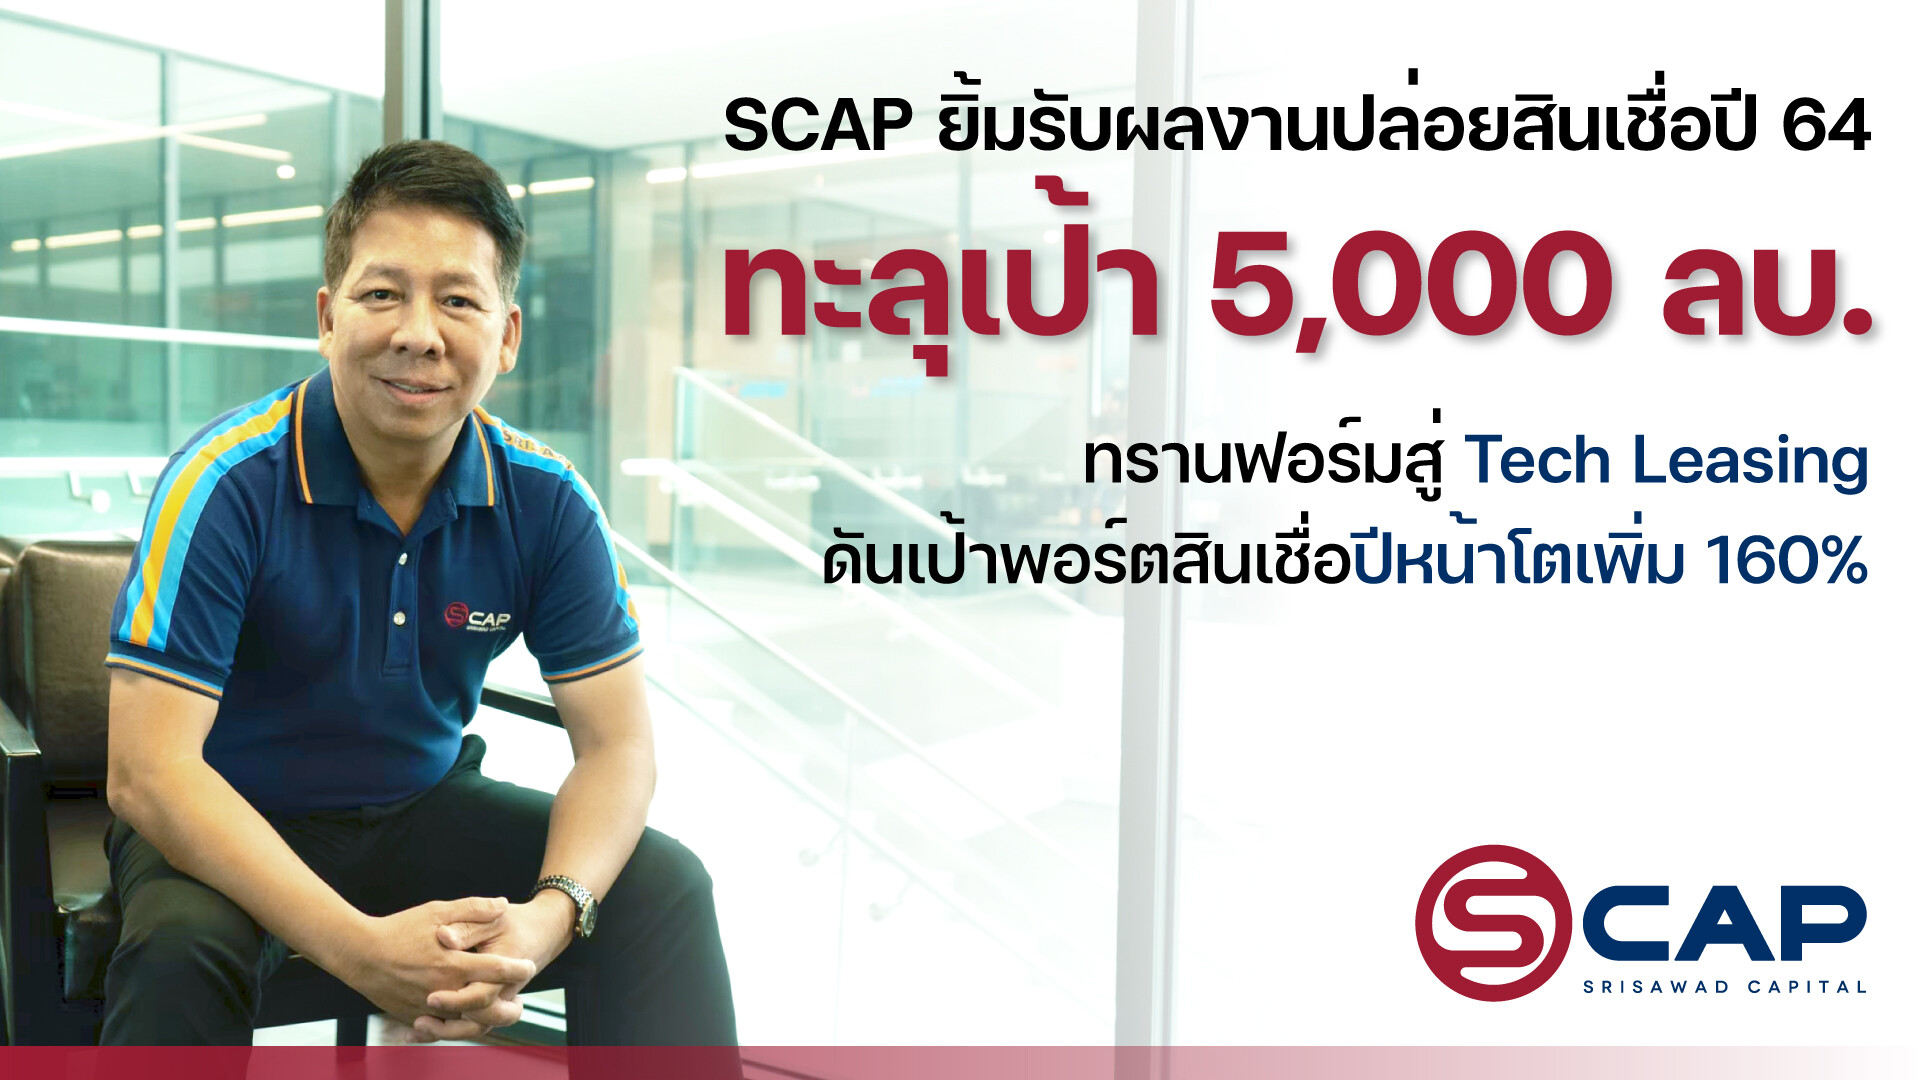 SCAP ยิ้มรับผลงานปล่อยสินเชื่อปี 64 ทะลุเป้า 5,000 ลบ. ทรานฟอร์มสู่ Tech Leasing ดันเป้าพอร์ตสินเชื่อปีหน้าโตเพิ่ม 160%